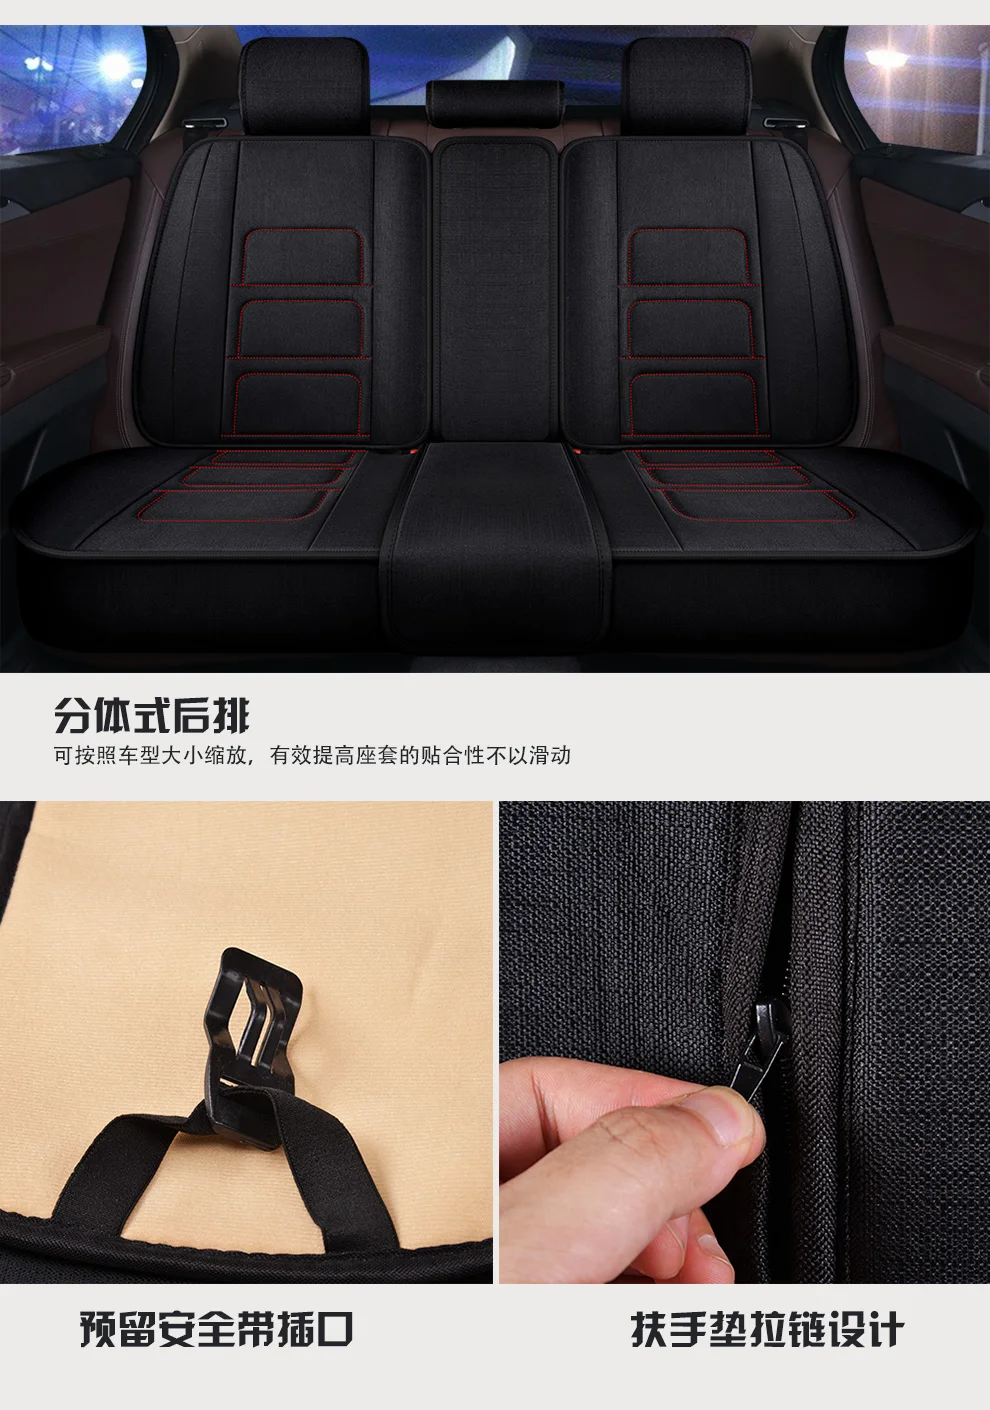 Авто Полное покрытие чехлы на сиденья льняное волокно чехол на автомобильное сиденье для Volvo 80 серии s80 v70 xc70 xc40 xc60 xc90